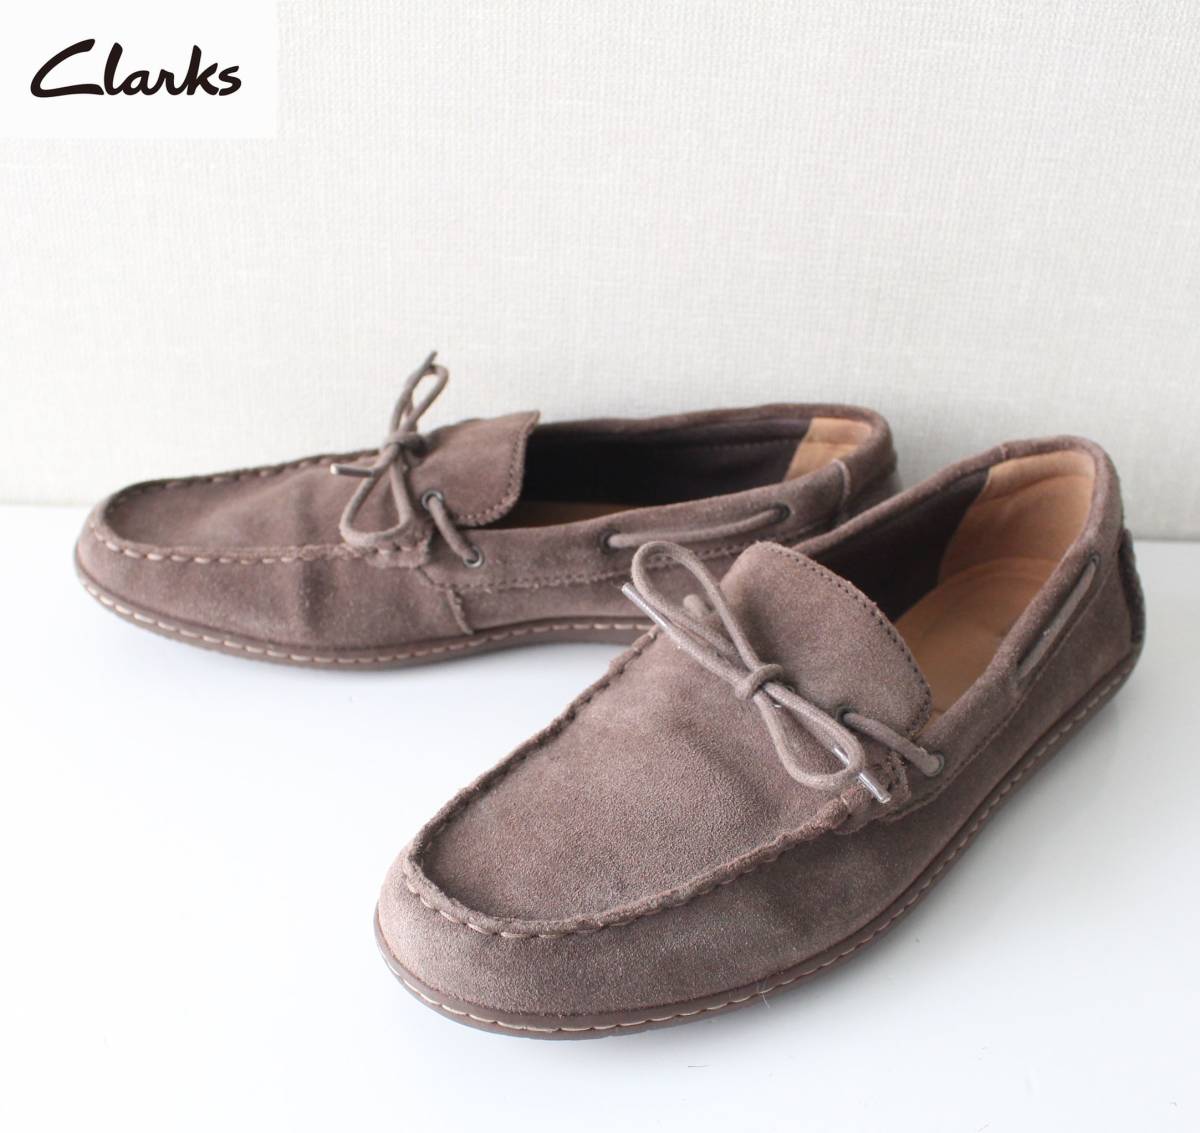 【 Clarks クラークス 】スエード デッキシューズ サイズ26cm レザー 靴 ライトブラウン UK8 US9_画像1